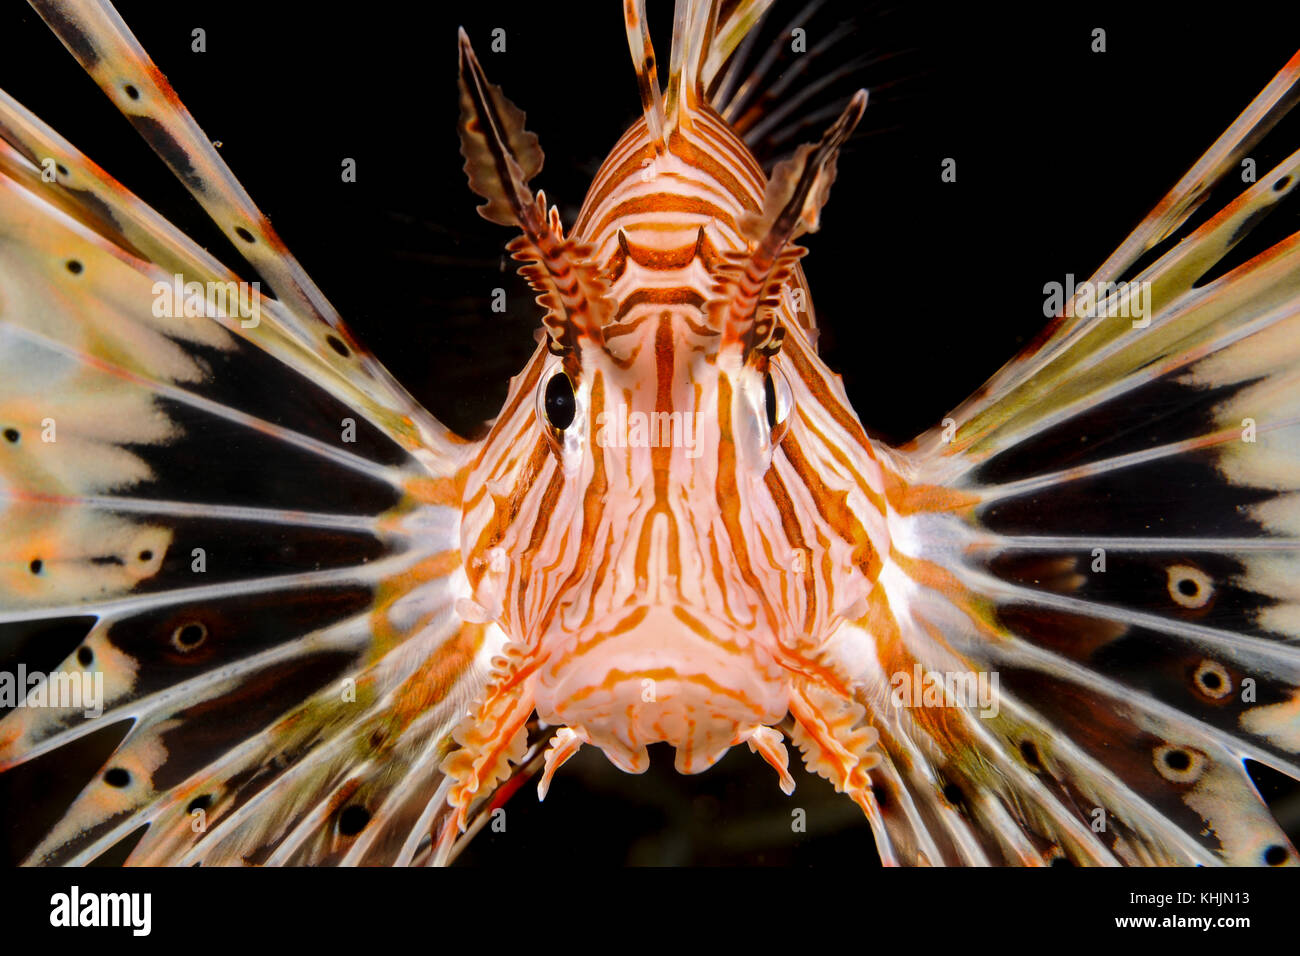 Israël, Eilat, mer rouge, sous l'eau - Photographie d'un poisson-papillon radial pterois radiata close up de la tête et le visage Banque D'Images